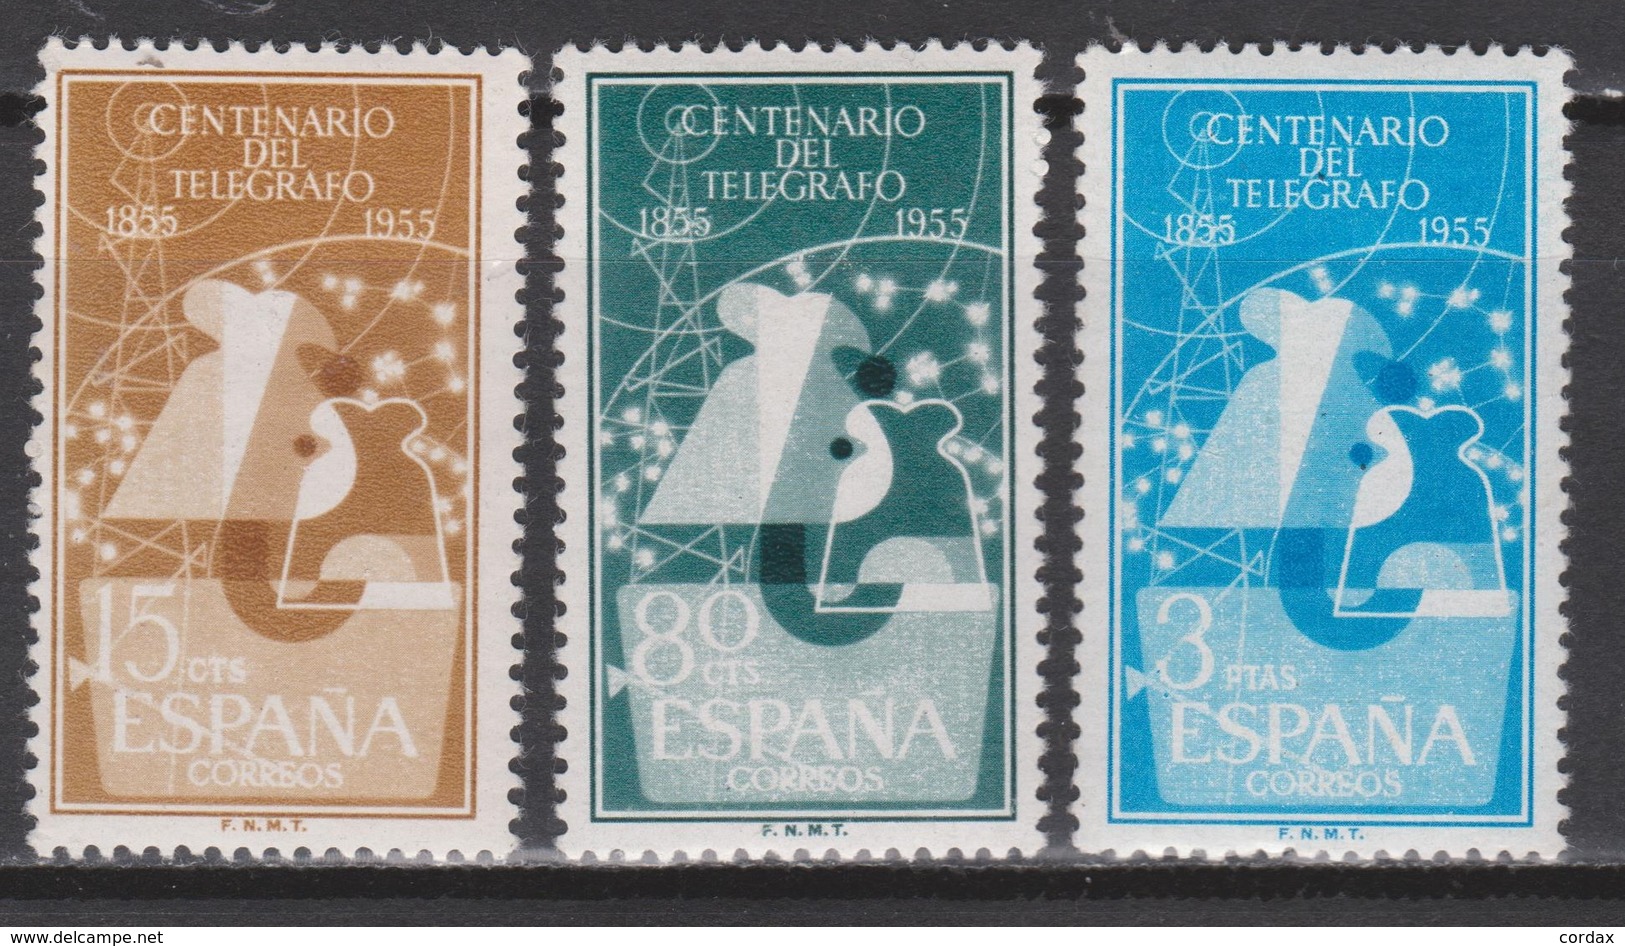 1955 CENTENARIO DEL TELÉGRAFO SERIE NUEVA**. 41 € - Usados